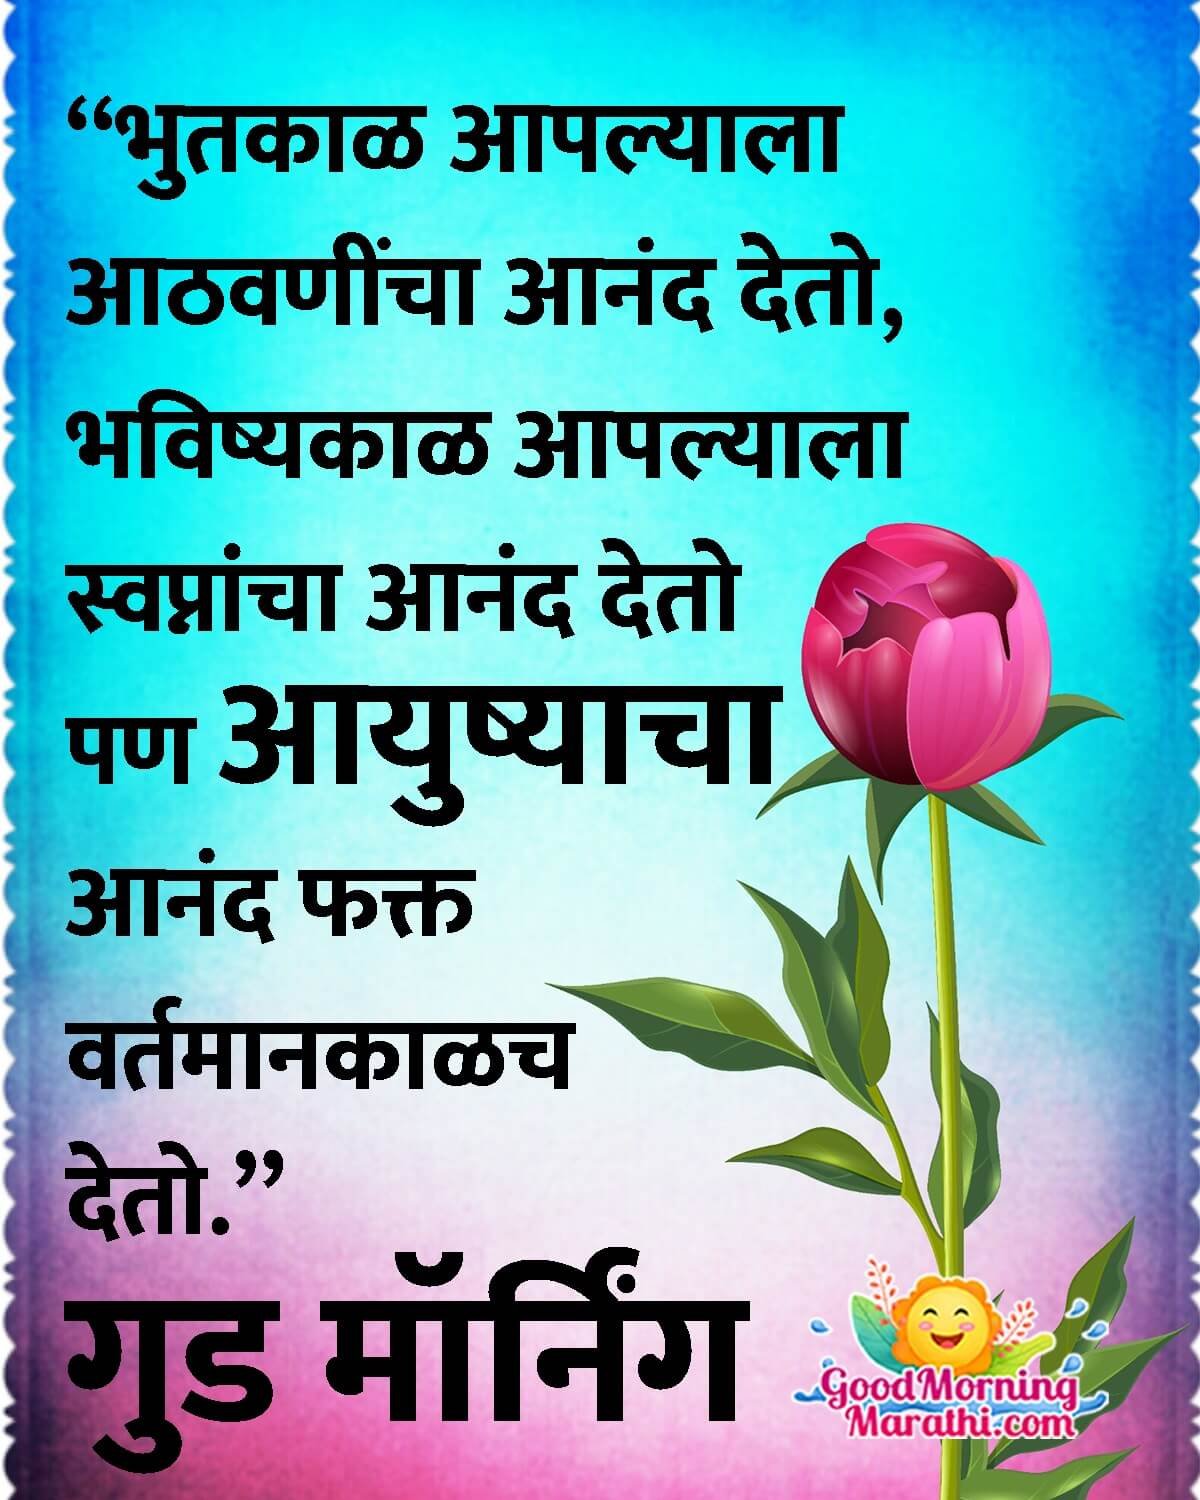 Good Morning Marathi Life Quote Image